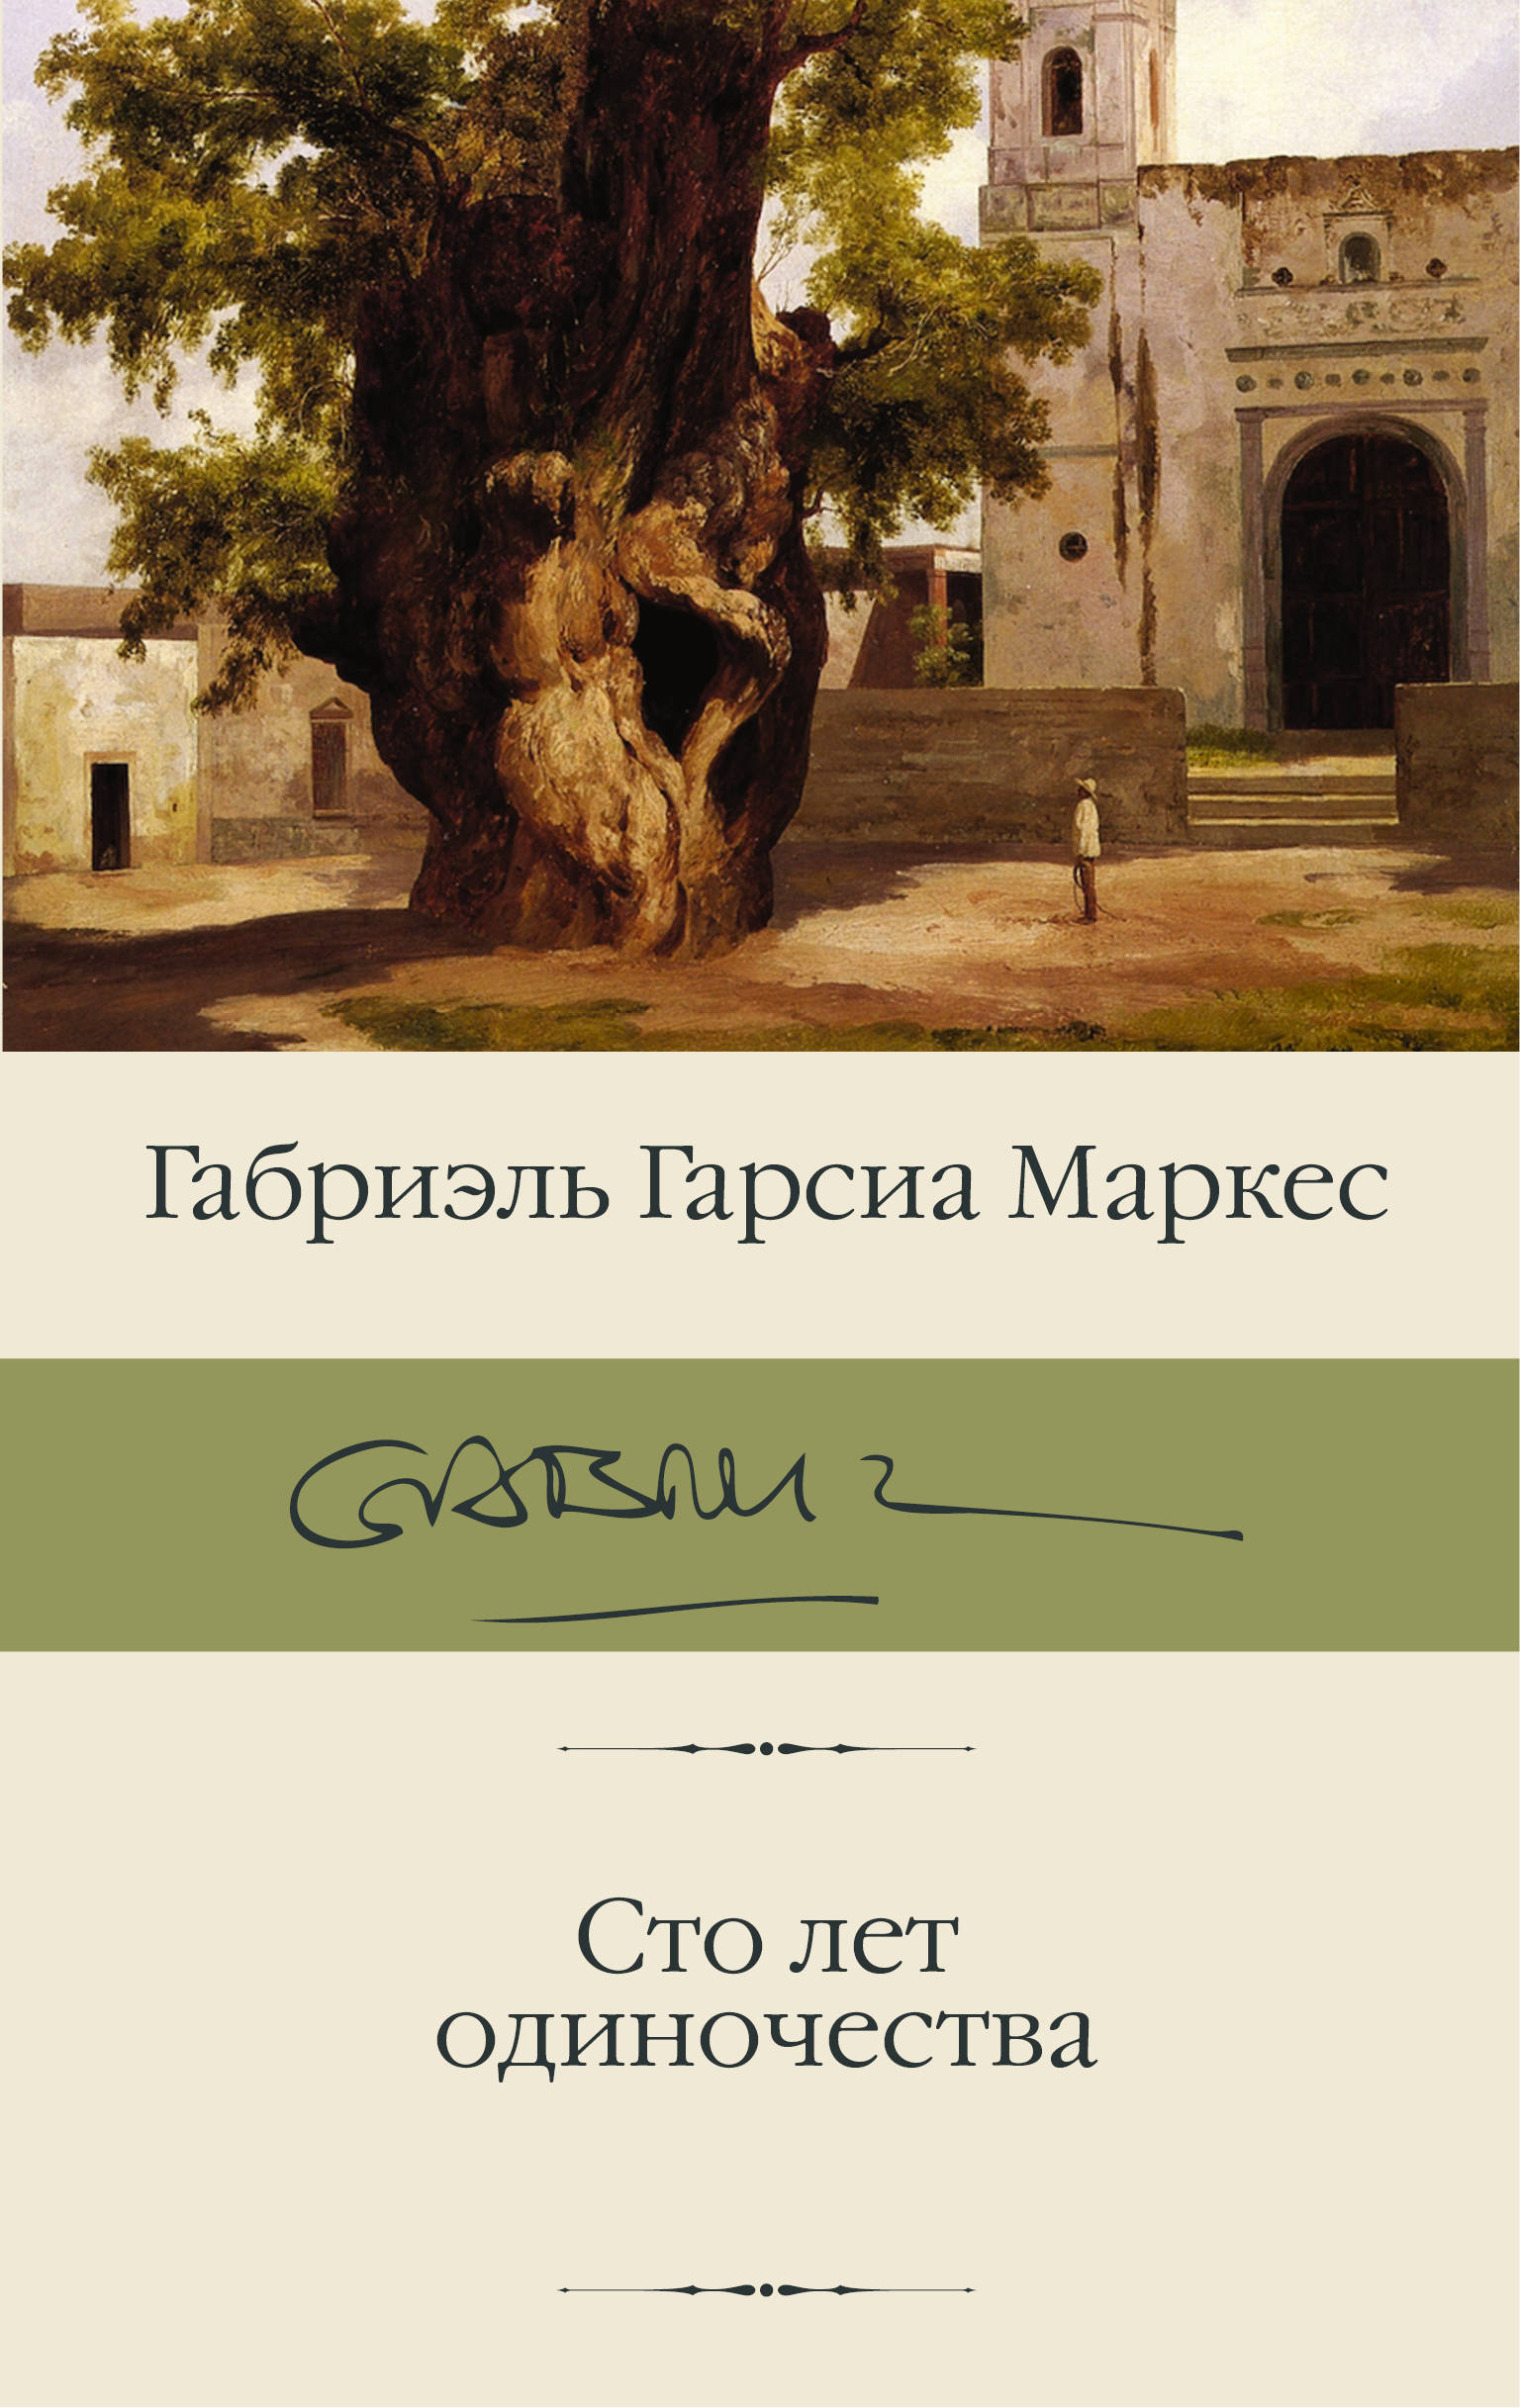 Собрание сочинений Габриэля Гарсия-Маркеса в 9 томах